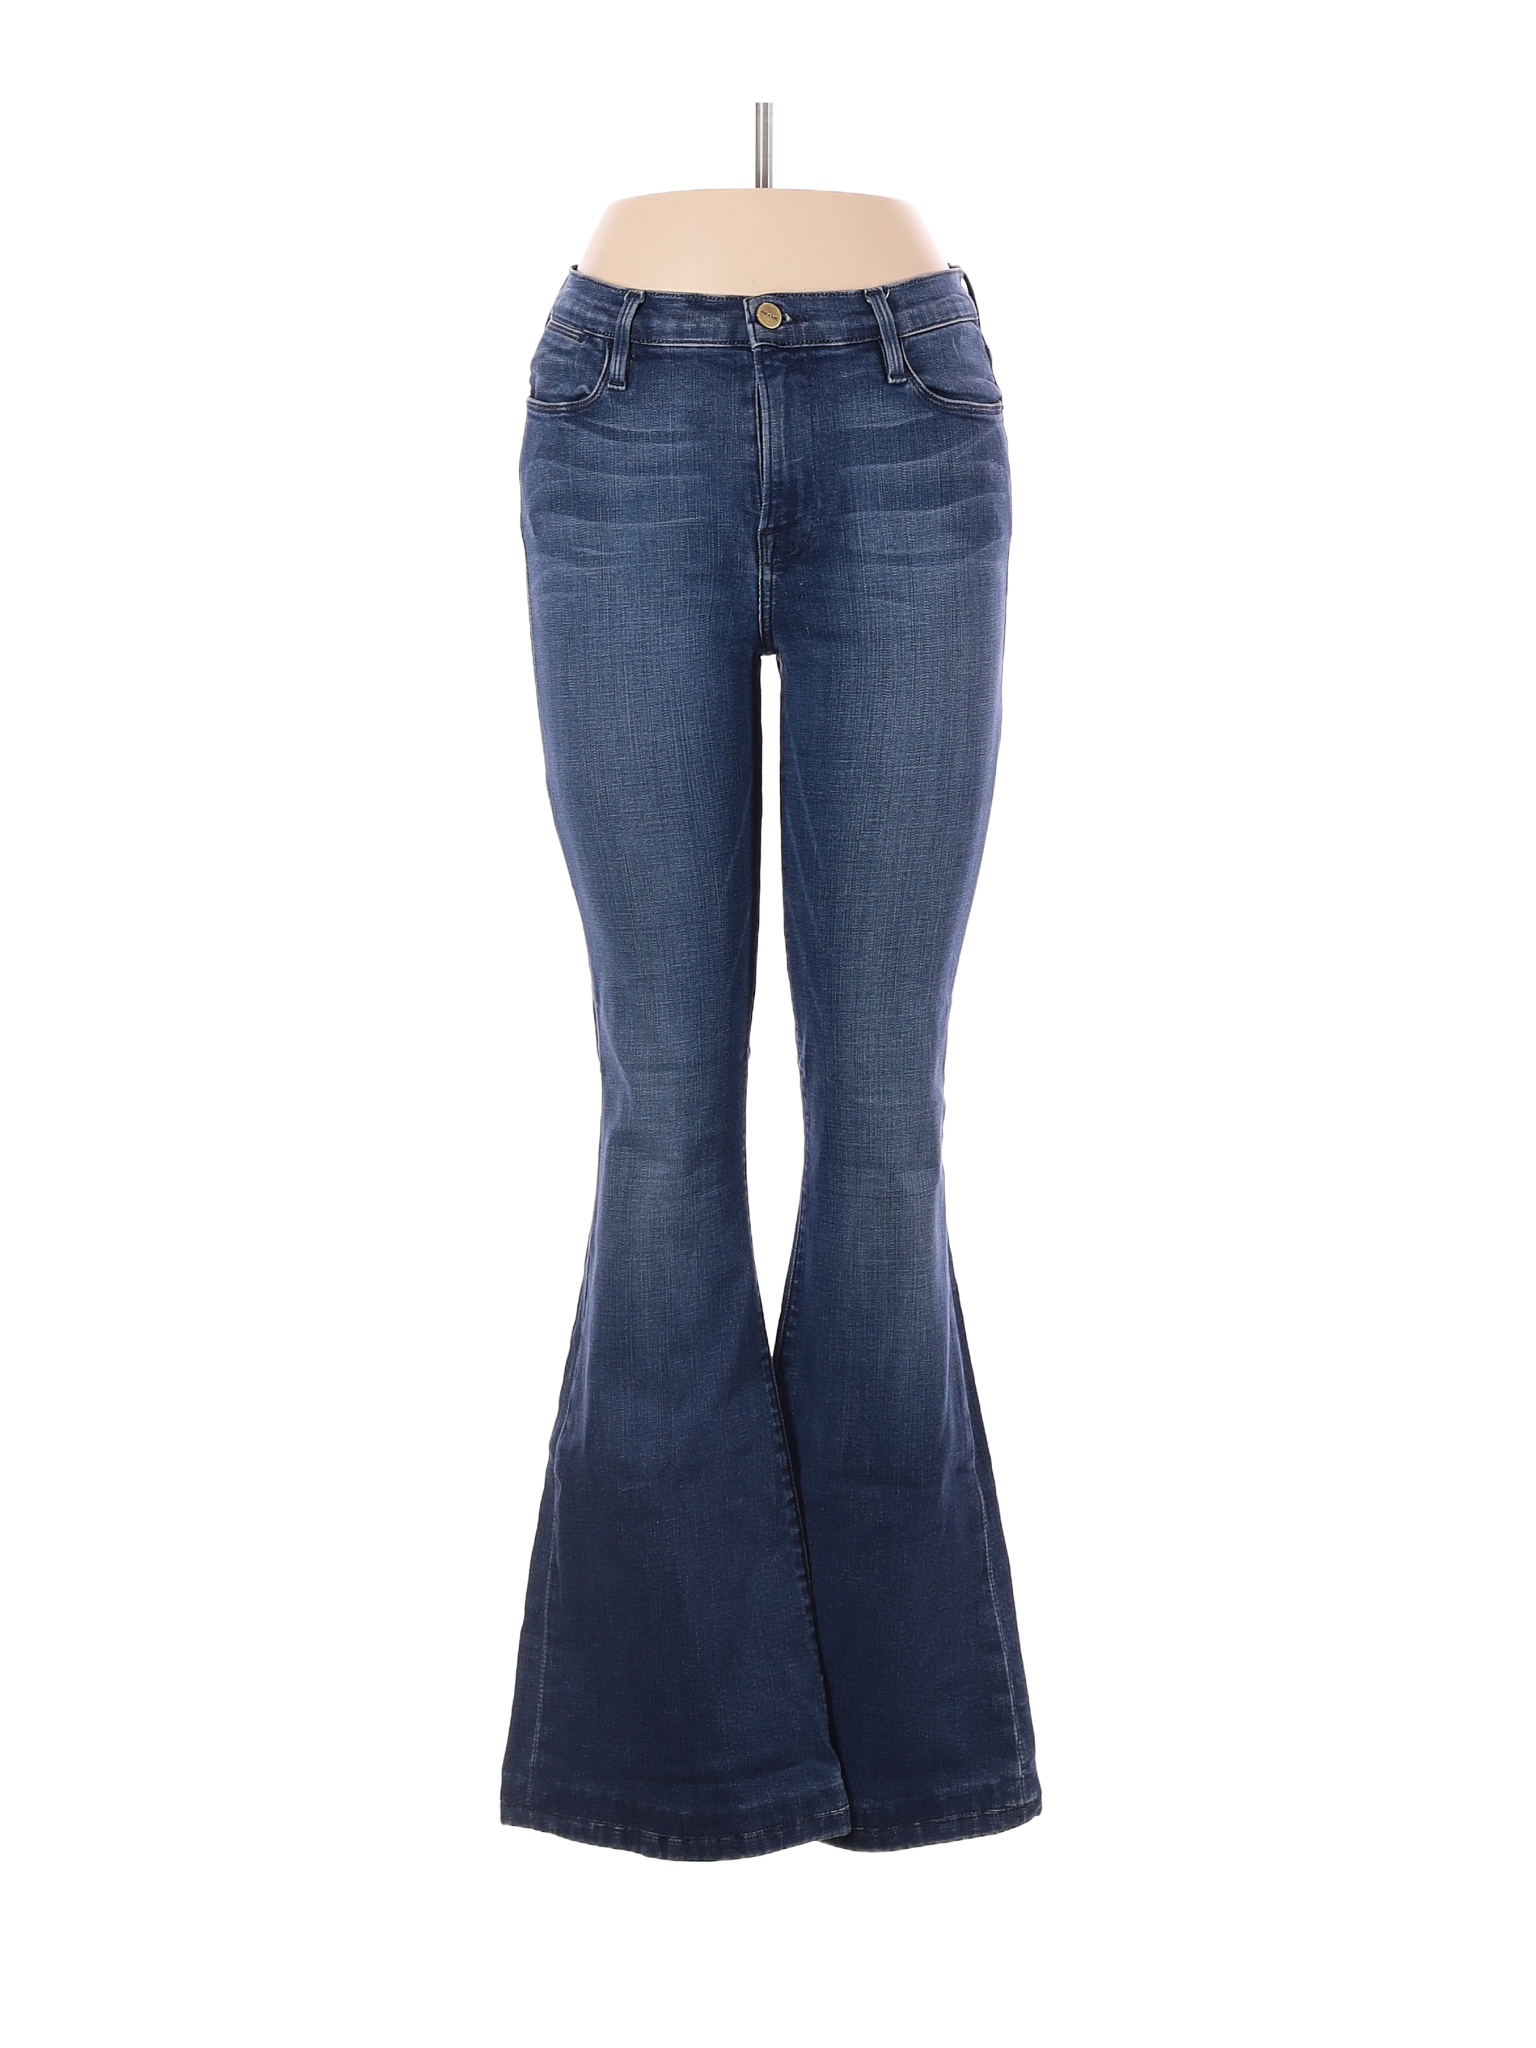 FRAME Denim Solid Blue Jeans 29 Waist - 53% off | thredUP